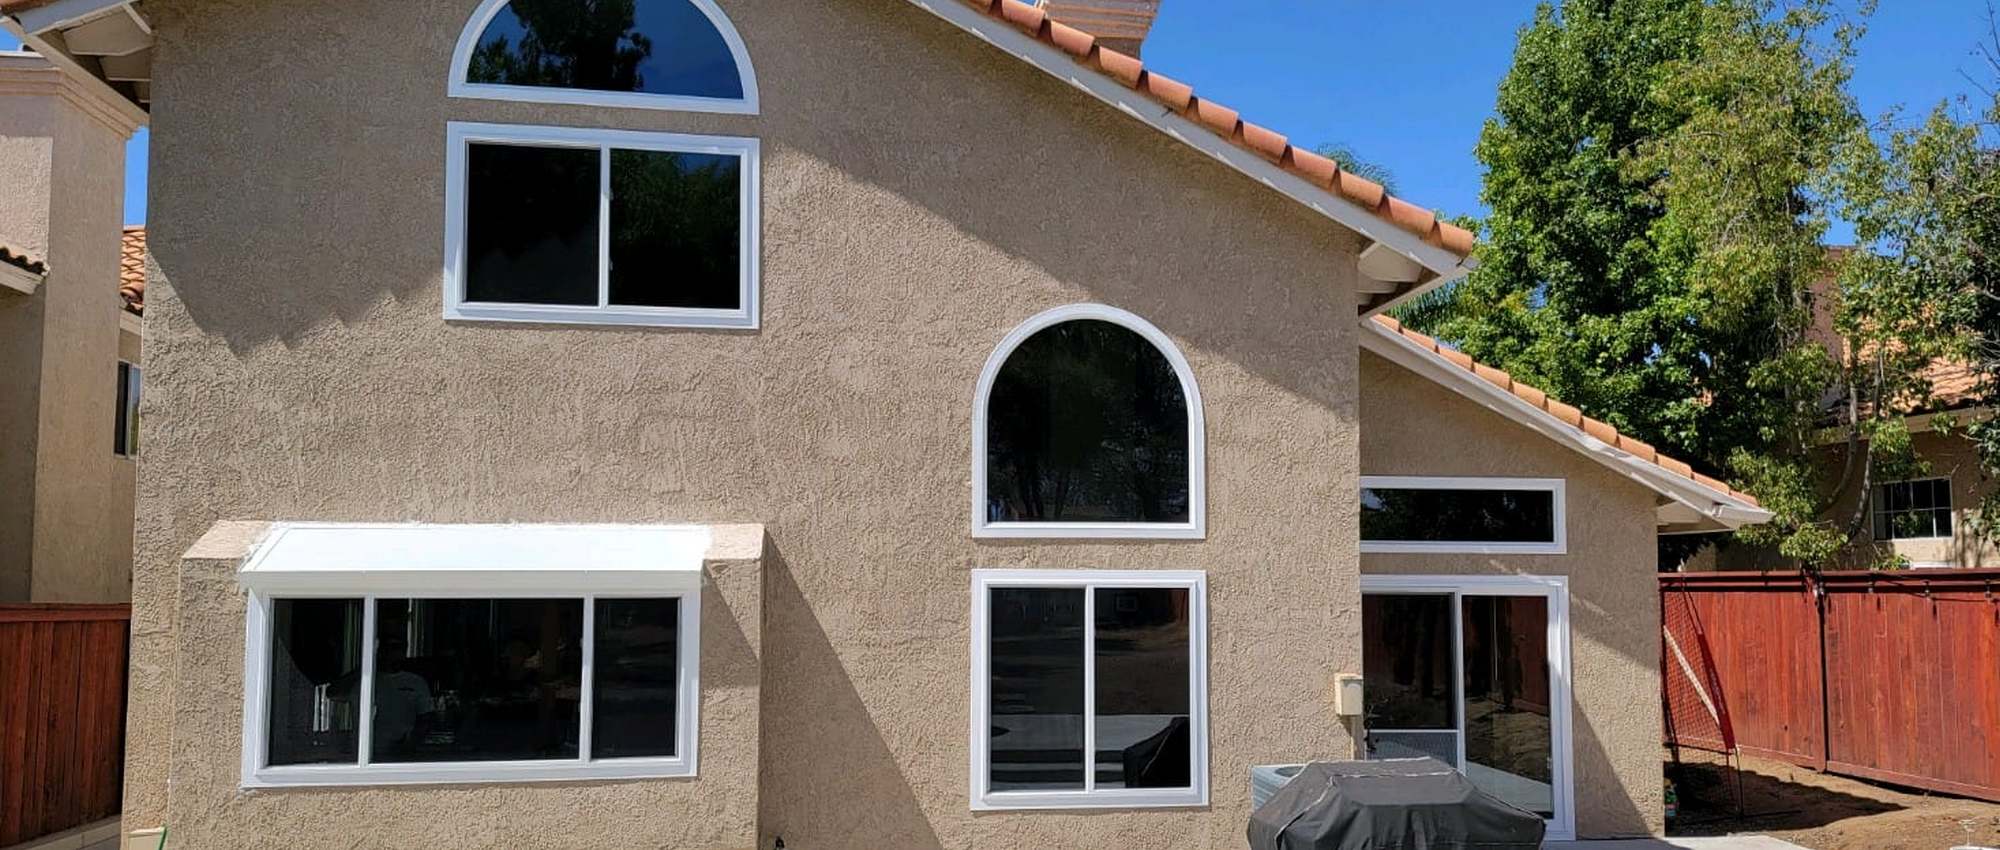 Window and Patio Door Replacement in Claremont, CA cover)